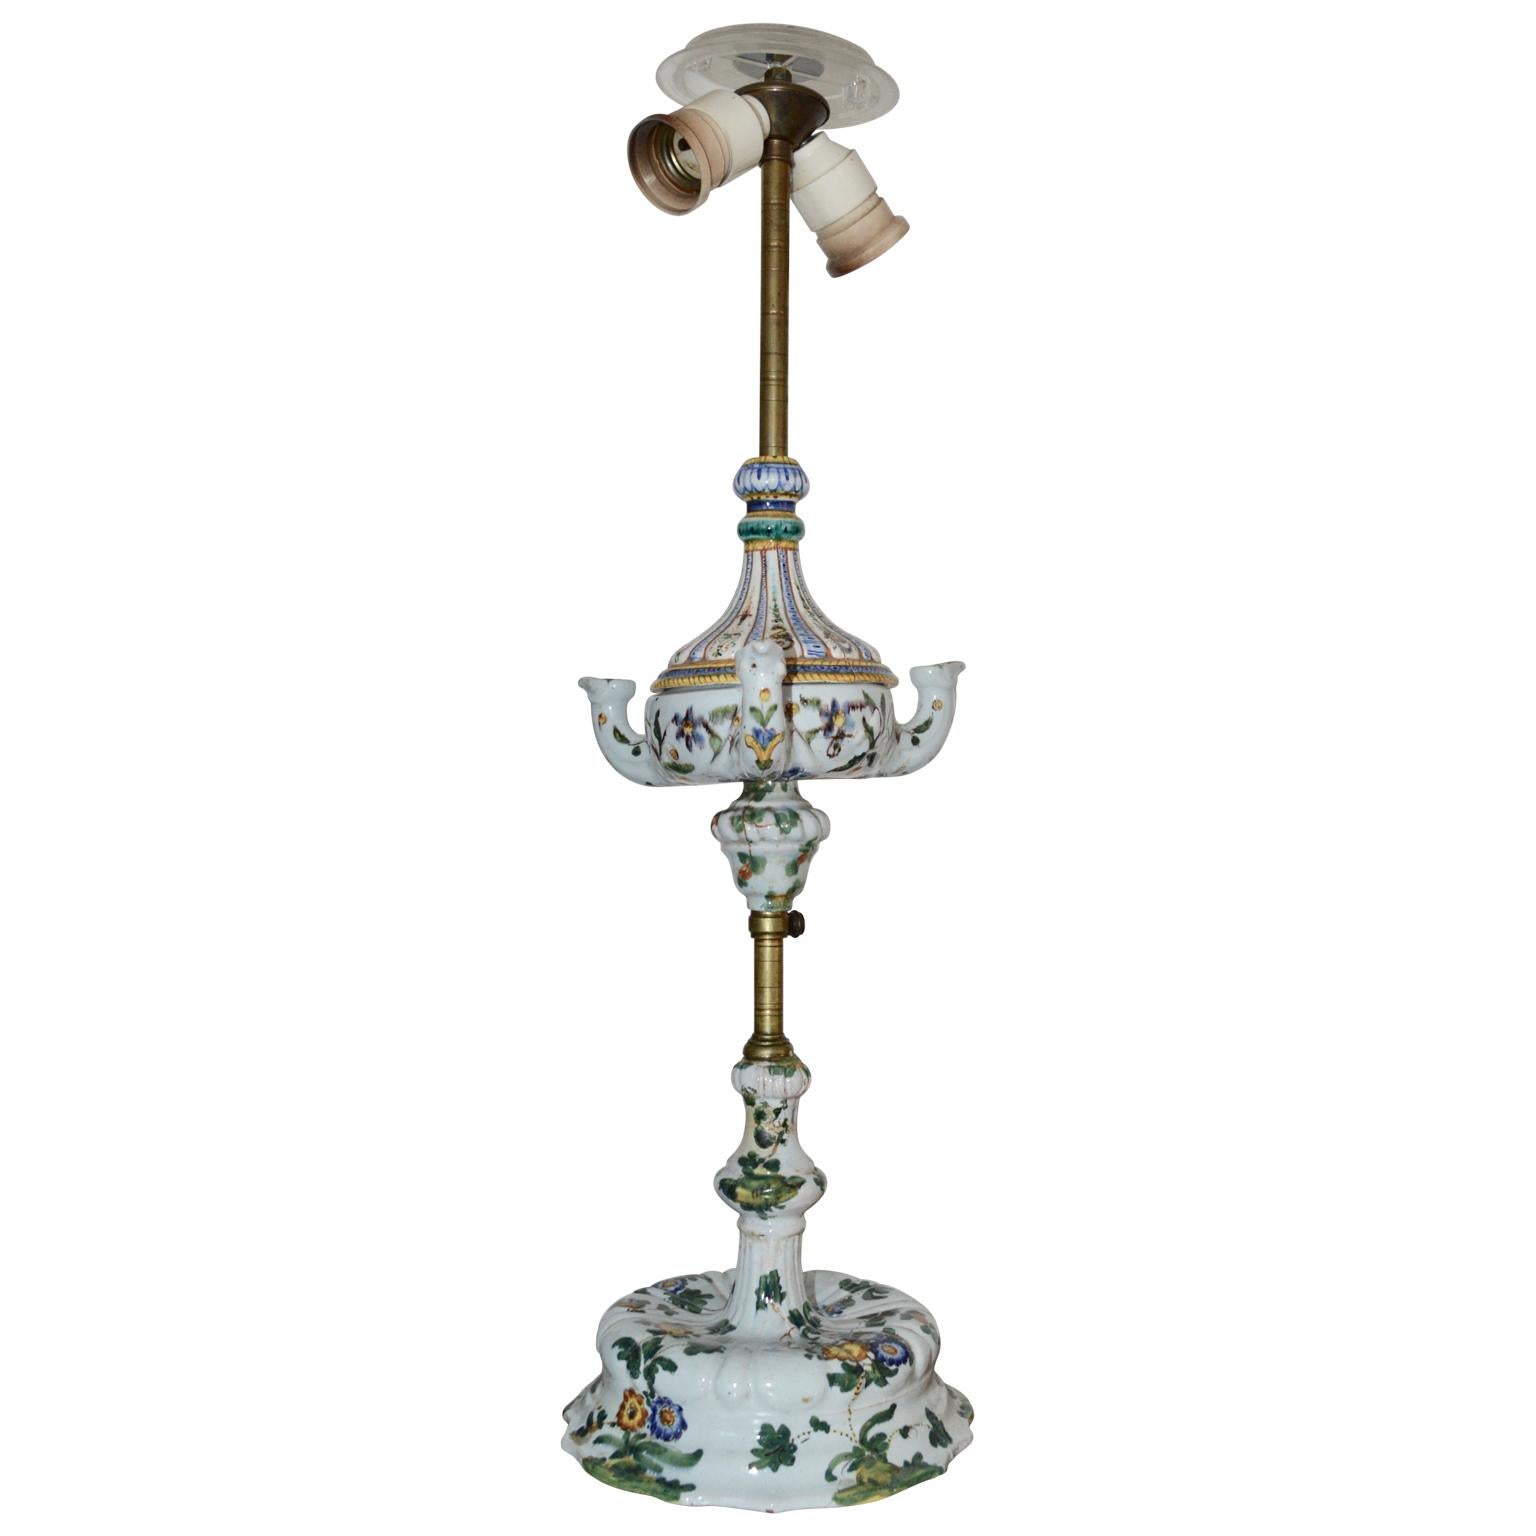 Fayence-Tischlampe aus dem frühen 19. Jahrhundert, umgedreht von einer brennenden Öllampe